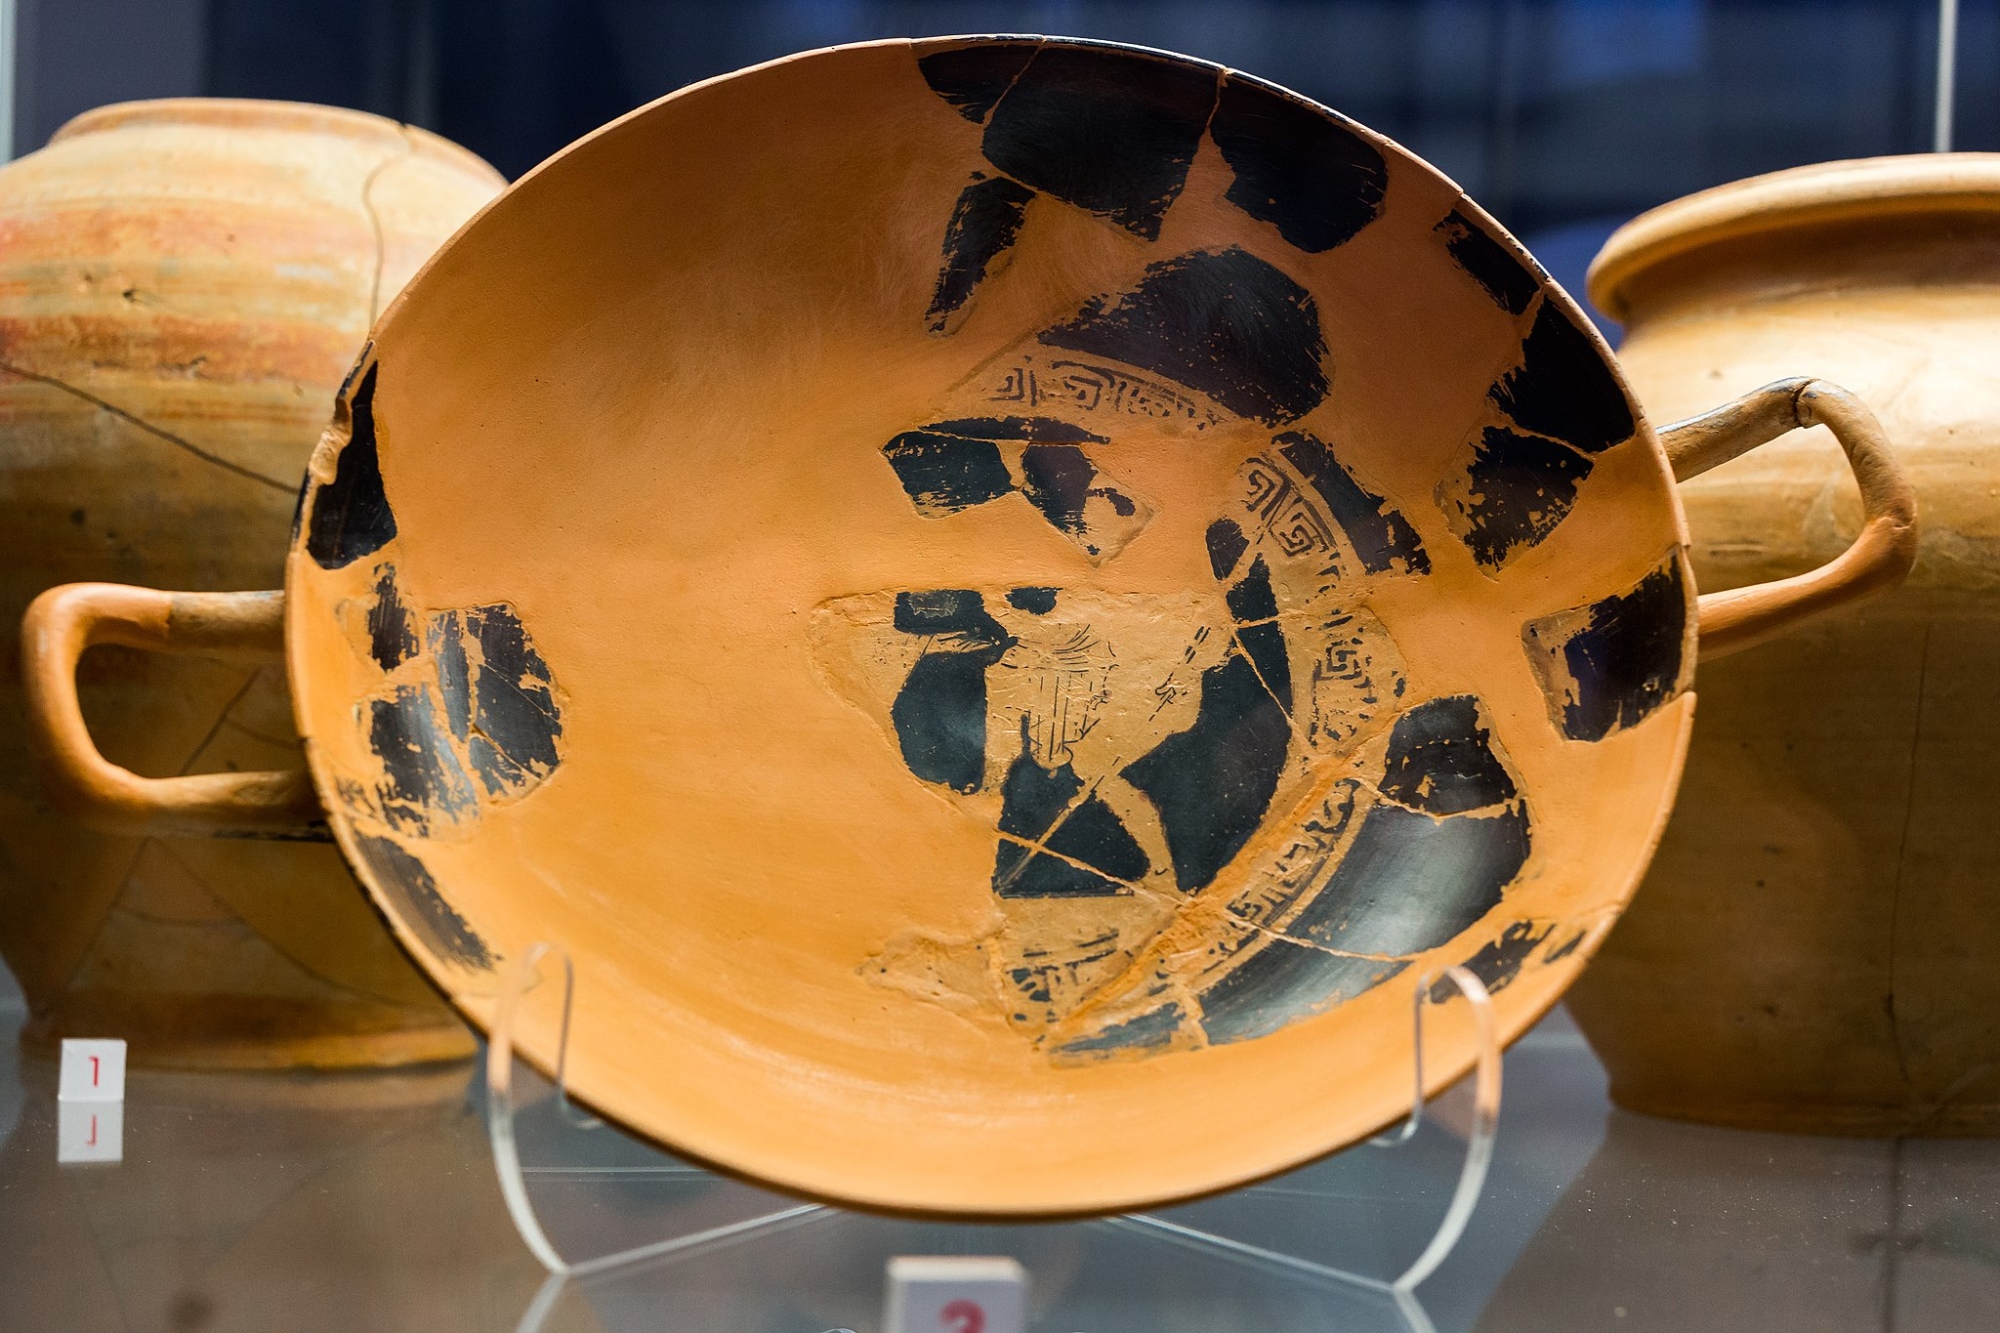 Découverte étrusque au Musée archéologique de San Gimignano